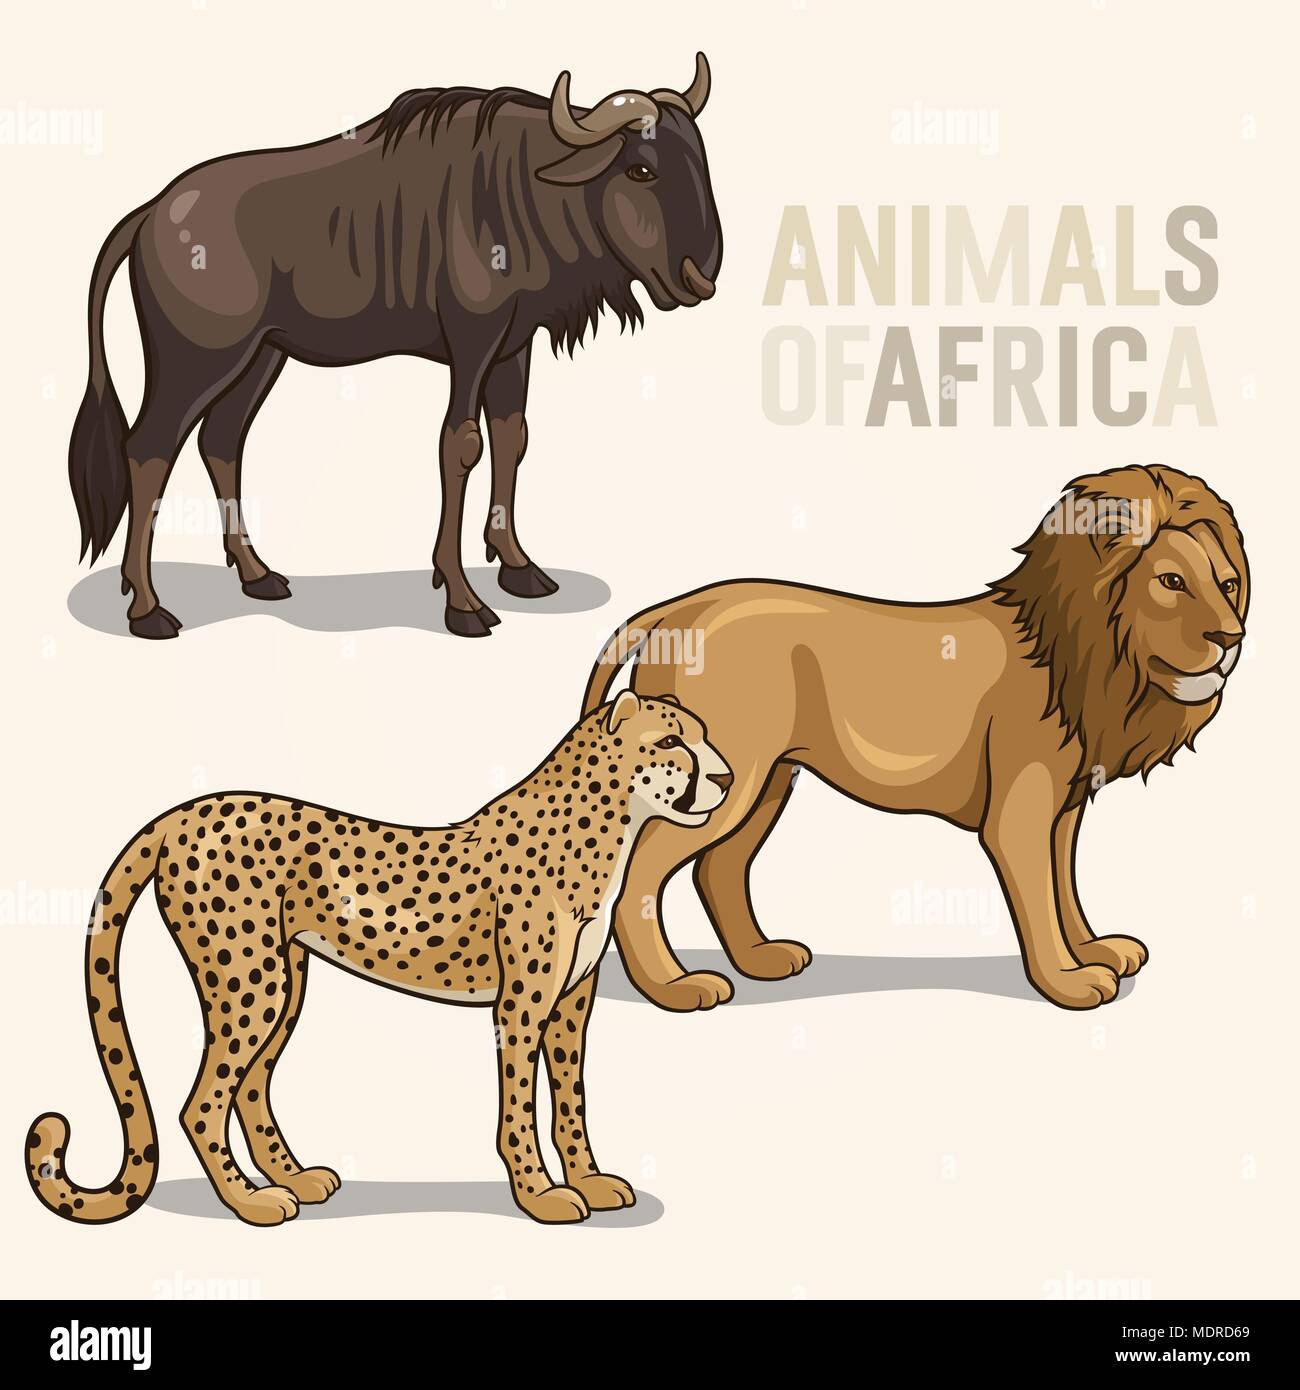 Vektorgrafiken der afrikanischen Tiere auf einem hellen Hintergrund isoliert; Löwen, Geparden, Gnus Stock Vektor